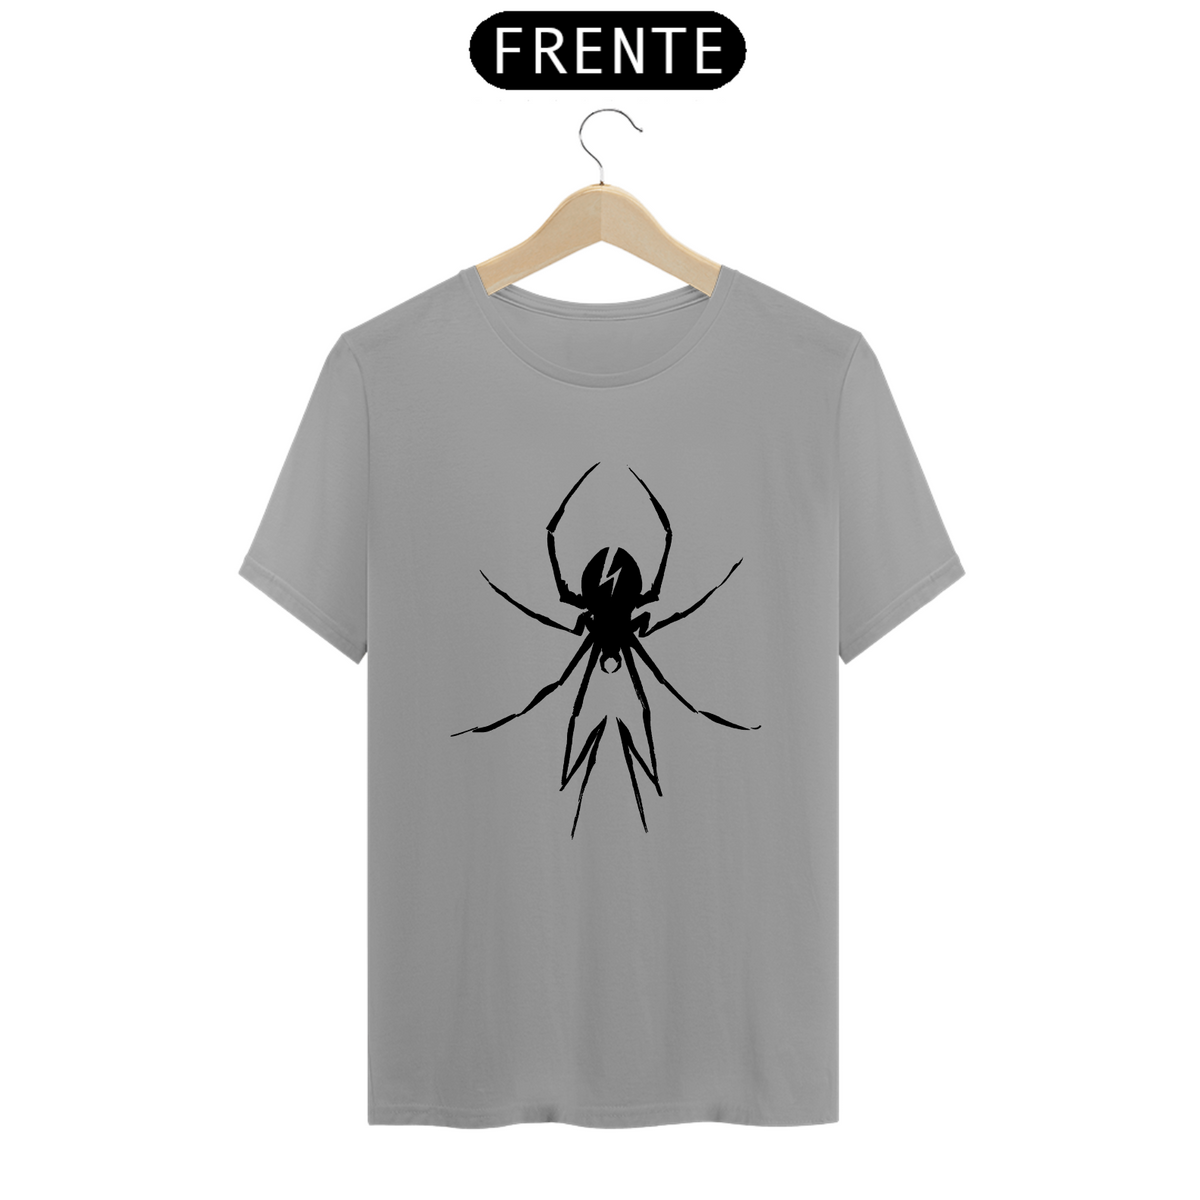 Nome do produto: Camiseta Quality - MCR Spider